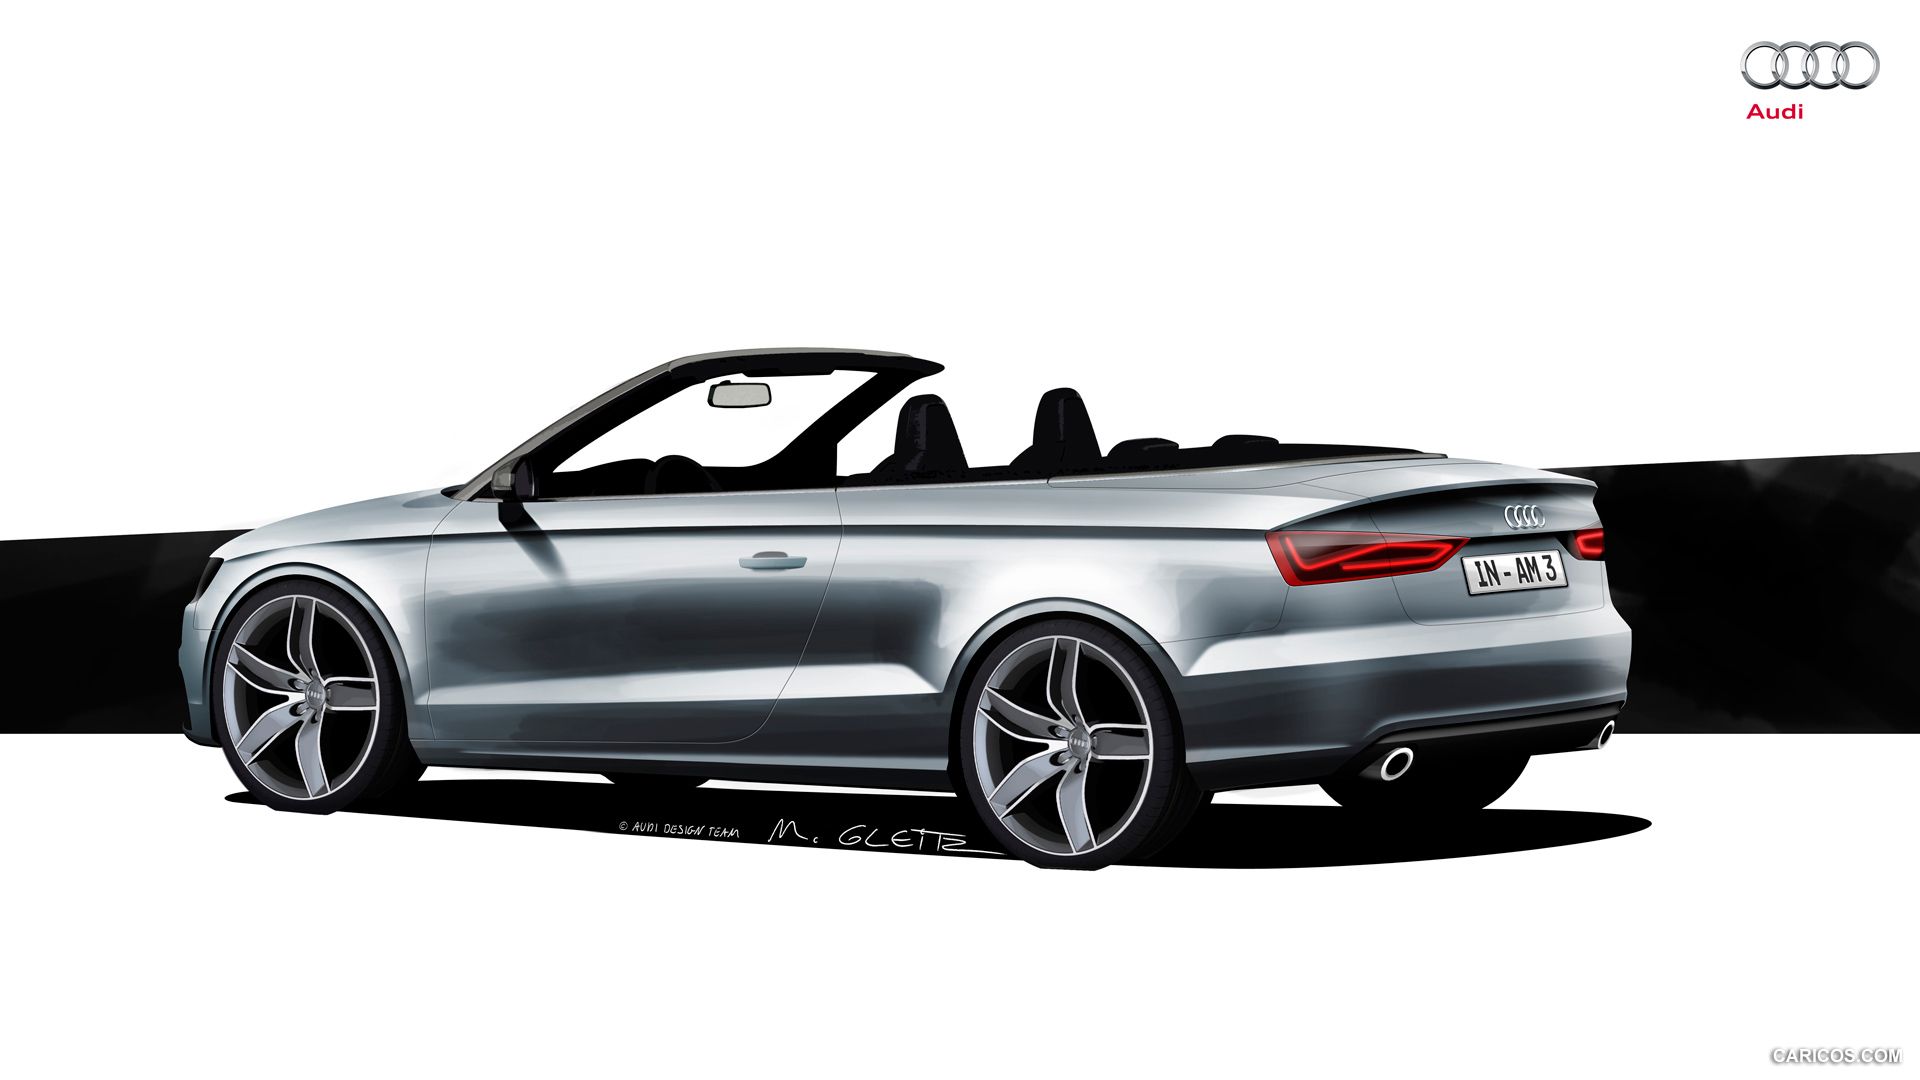 Audi A3 Cabriolet (2015) Sketch. HD Wallpaper